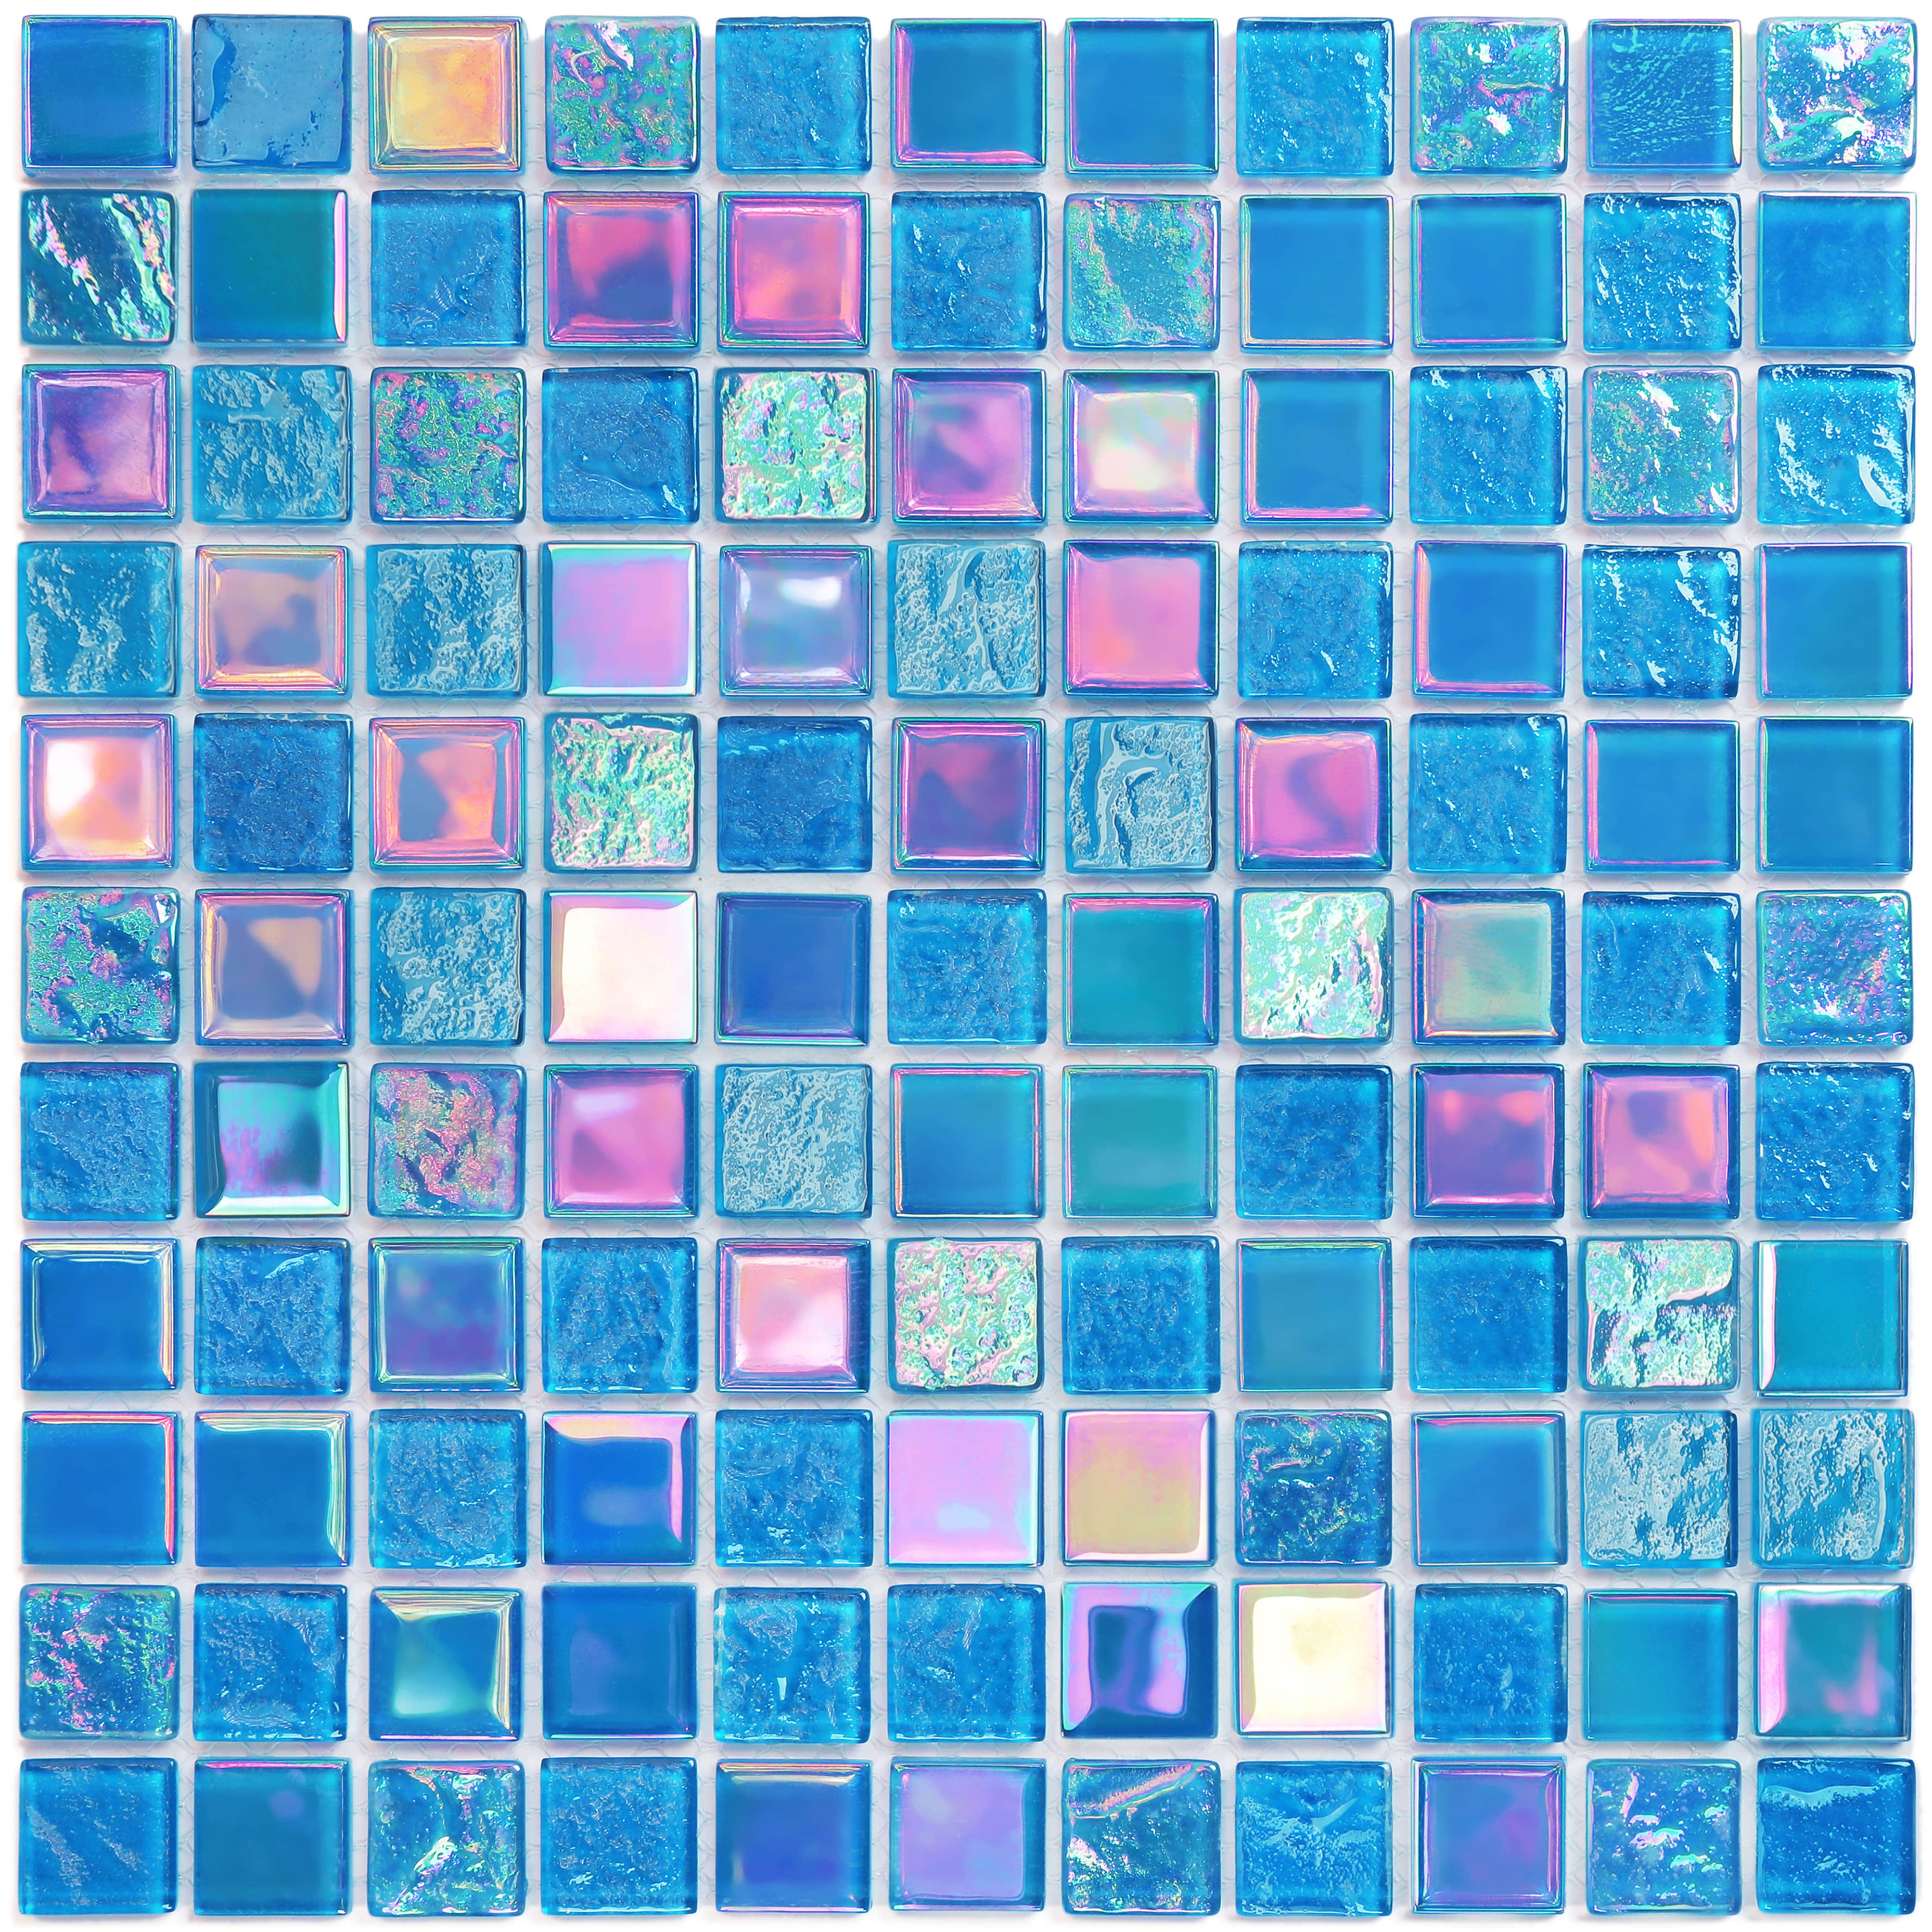 Vidrepur firing glass mosaic tiles pool